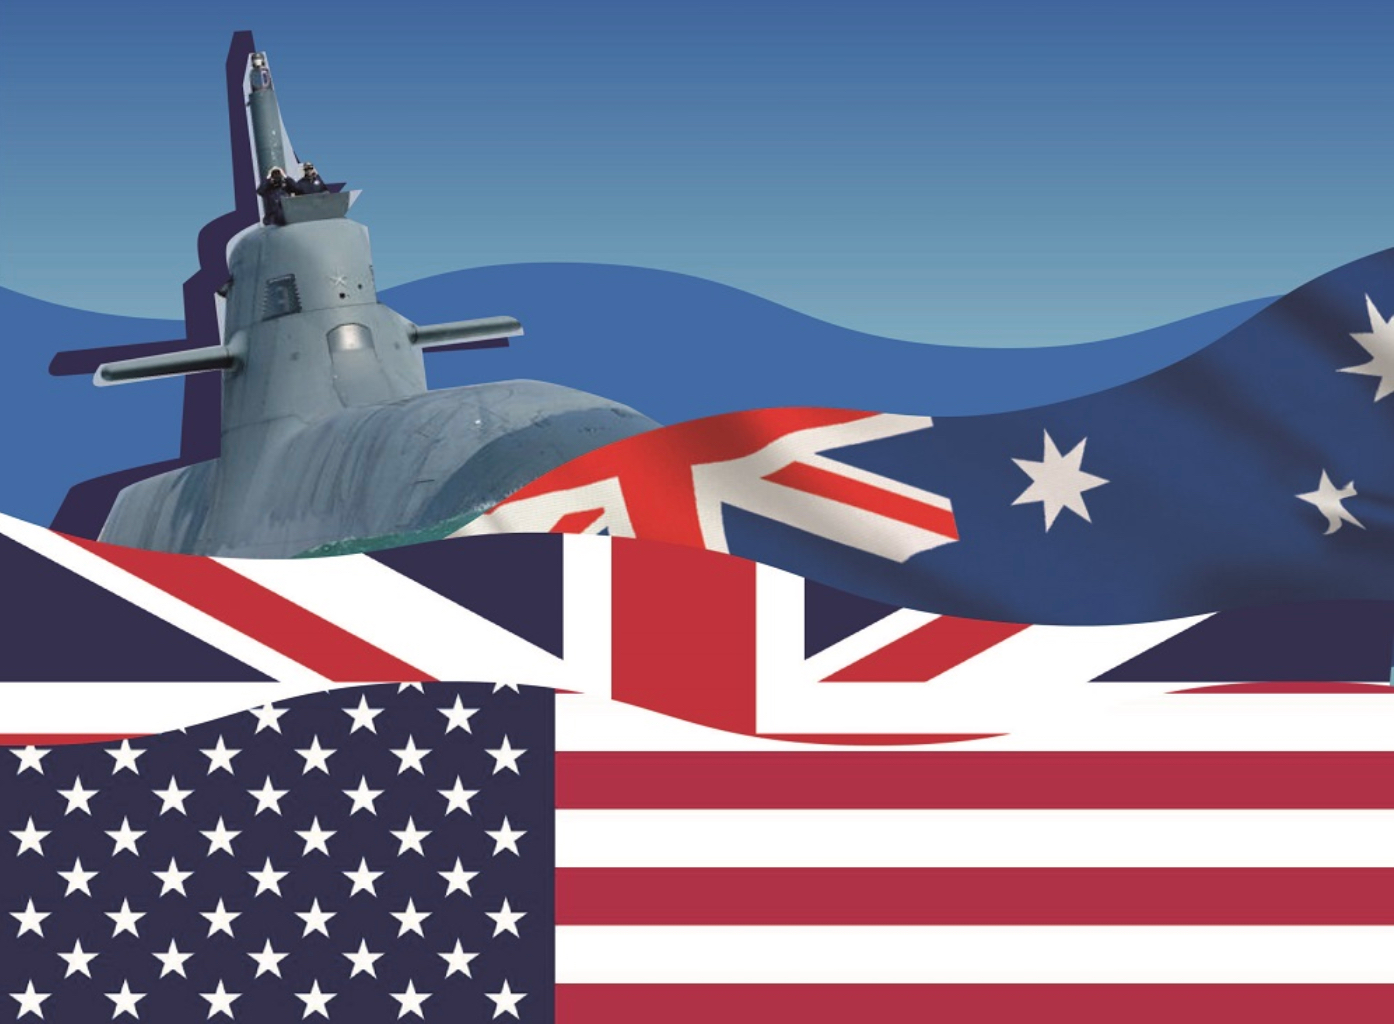 Αυστραλία και Γαλλία κατέληξαν σε διακανονισμό για τα υποβρύχια μετά την AUKUS